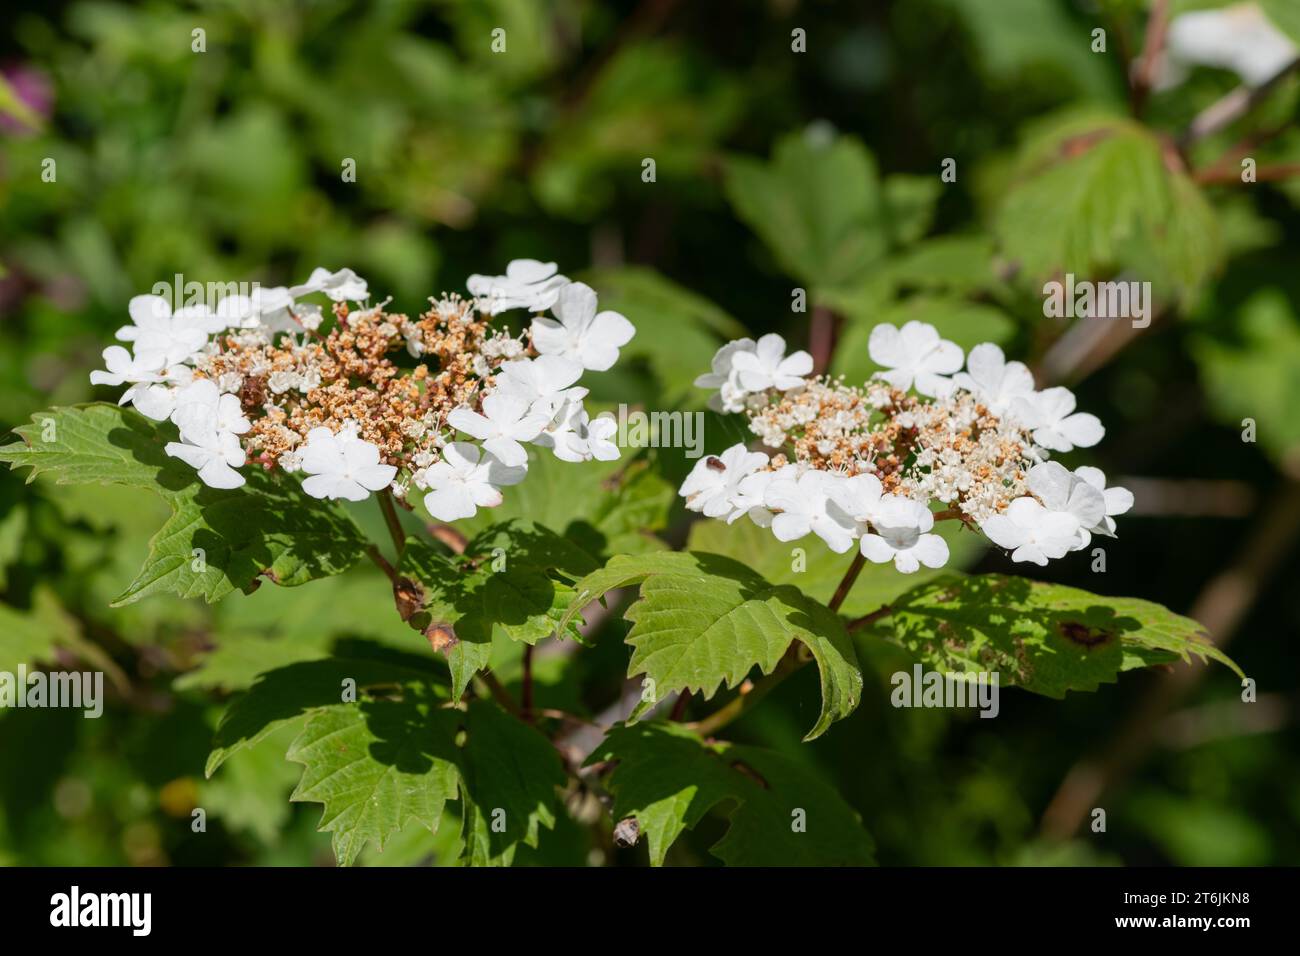 Close up of cranberry bush viburnum (viburnum trilobum) flowers in bloom Stock Photo